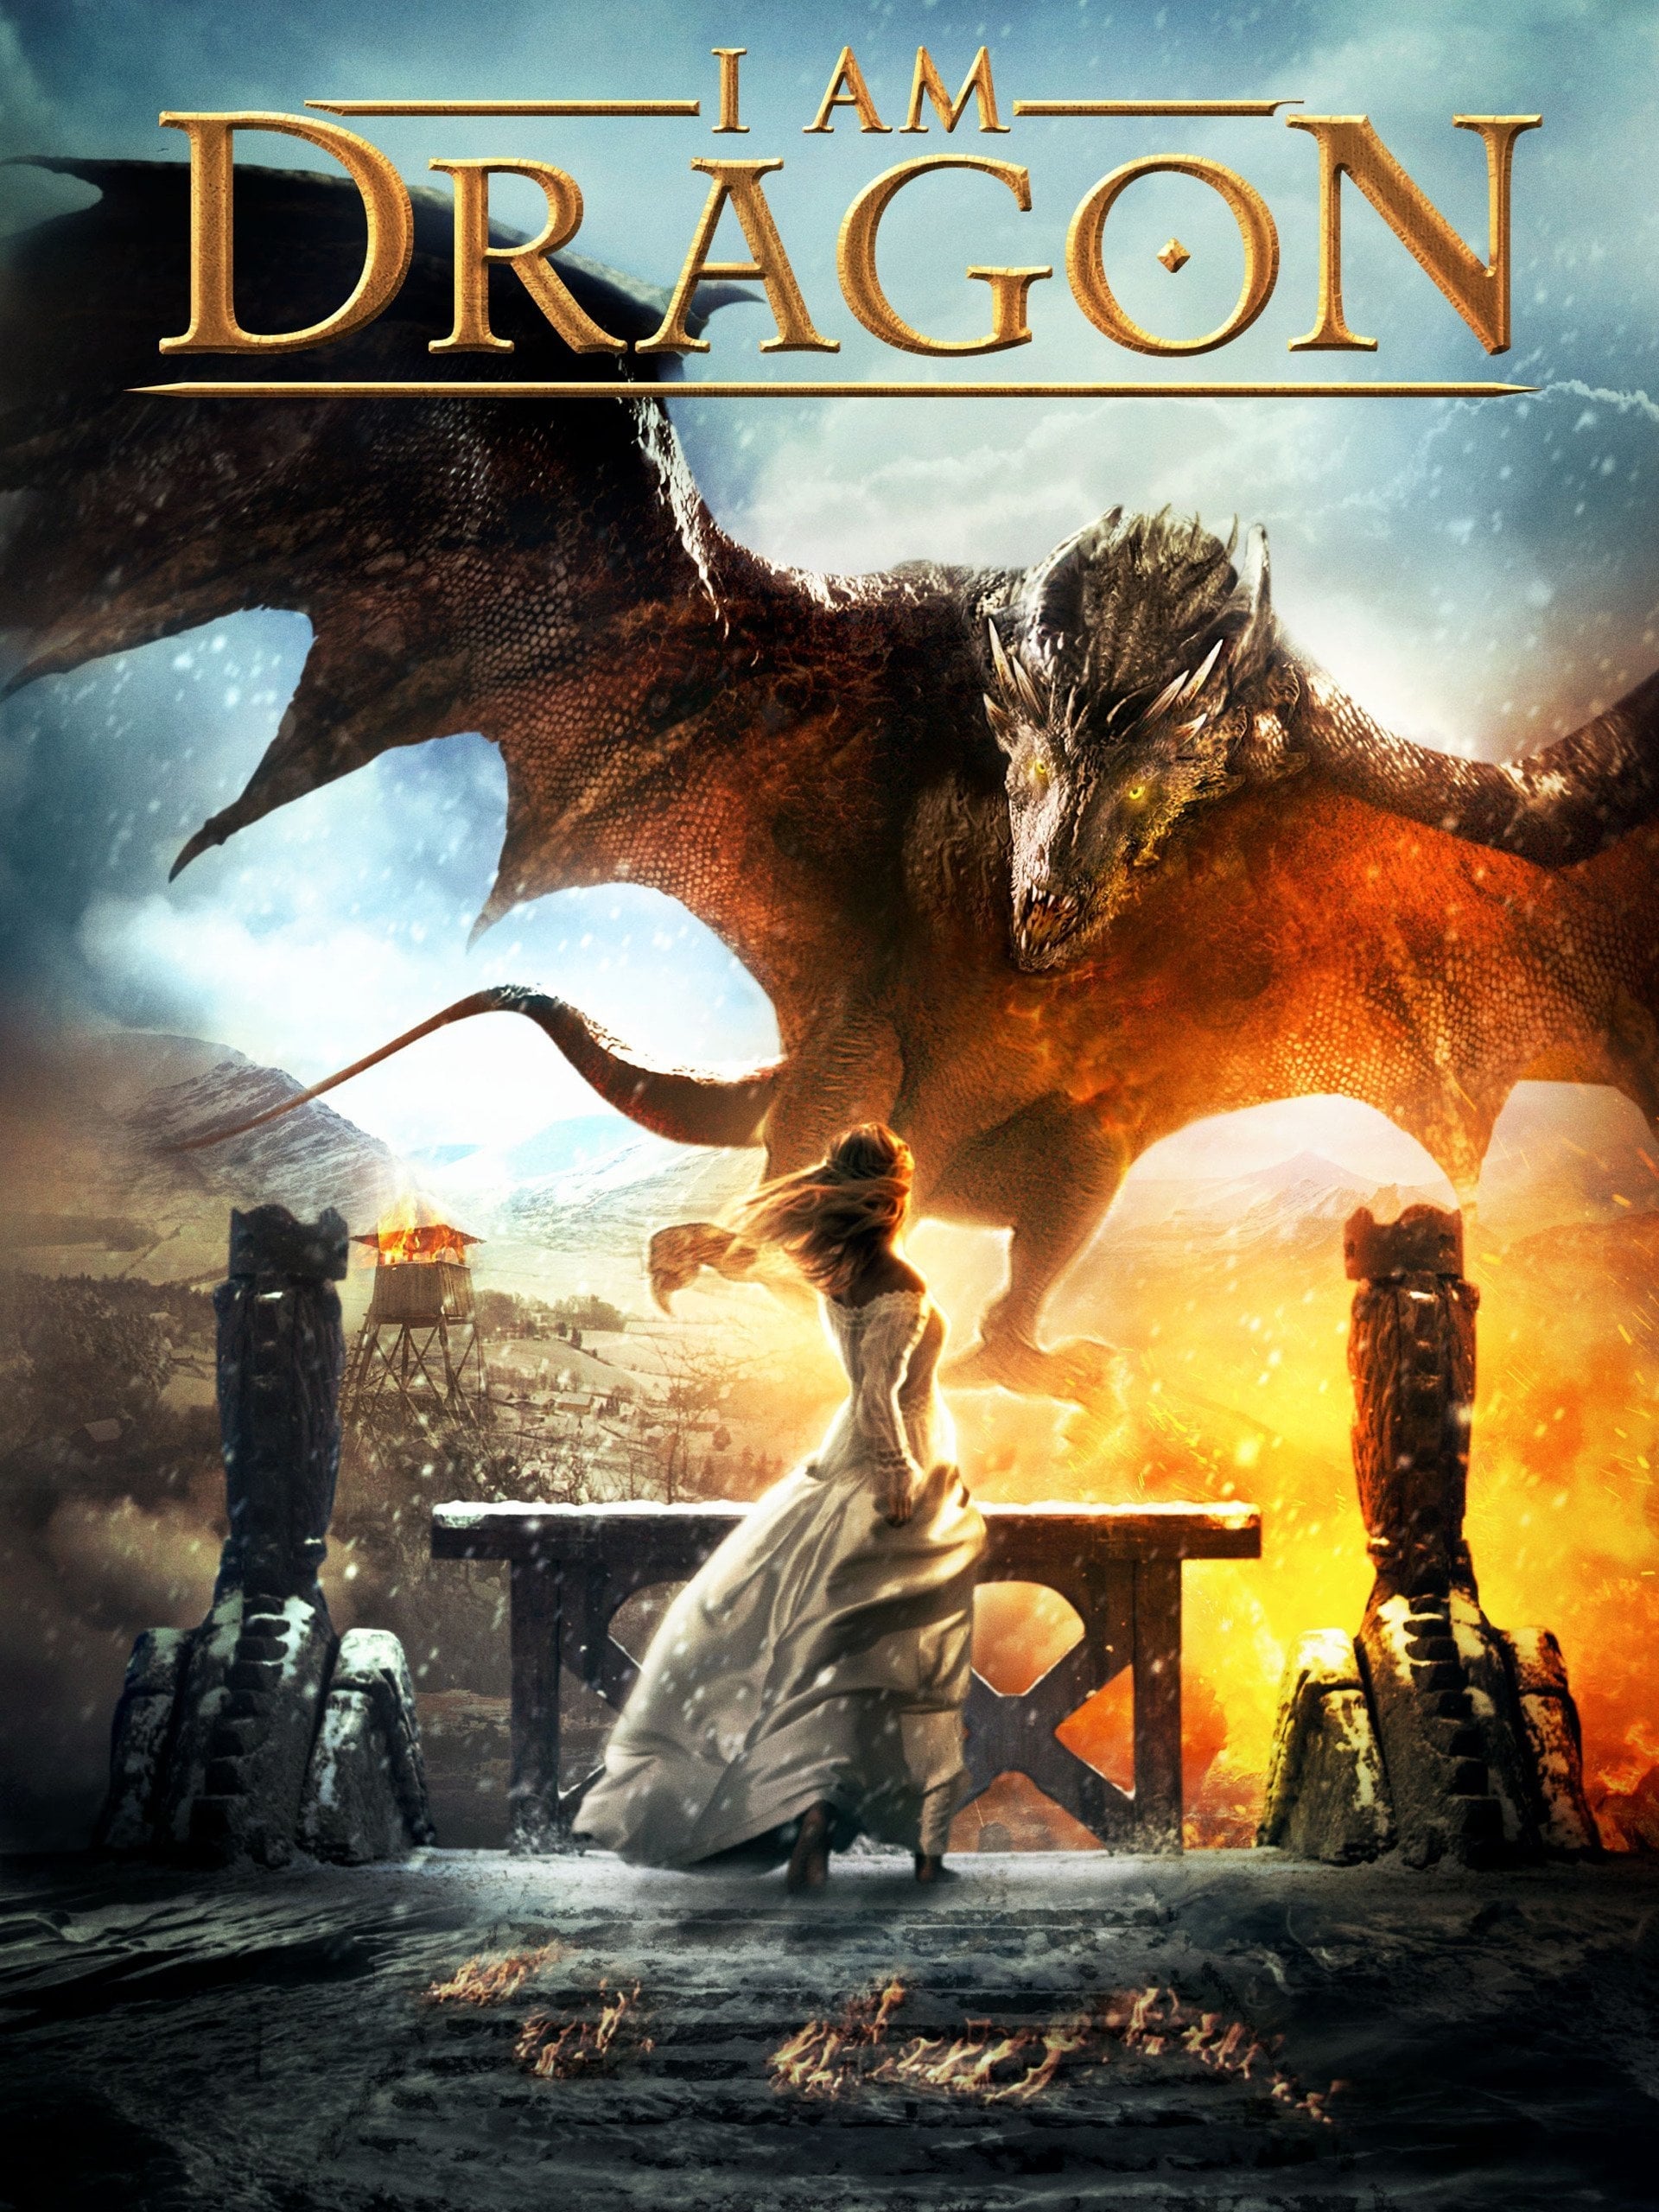 He's a Dragon (2015) • movies.film-cine.com